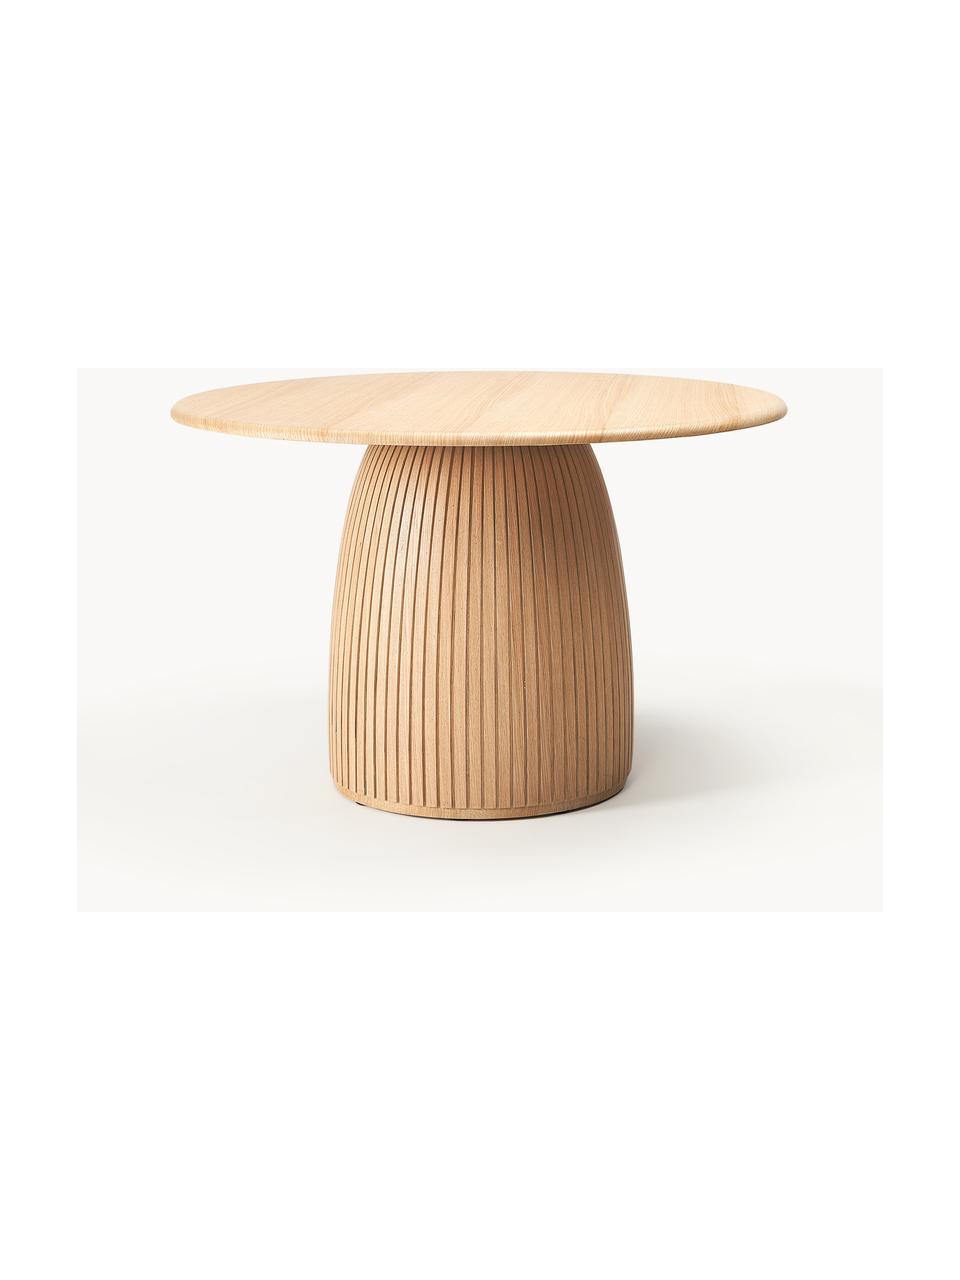 Kulatý jídelní stůl s drážkovanou strukturou Nelly, různé velikosti, Dubová dýha, s MDF deska (dřevovláknitá deska střední hustoty), certifikace FSC, Dubové dřevo, Ø 140 cm